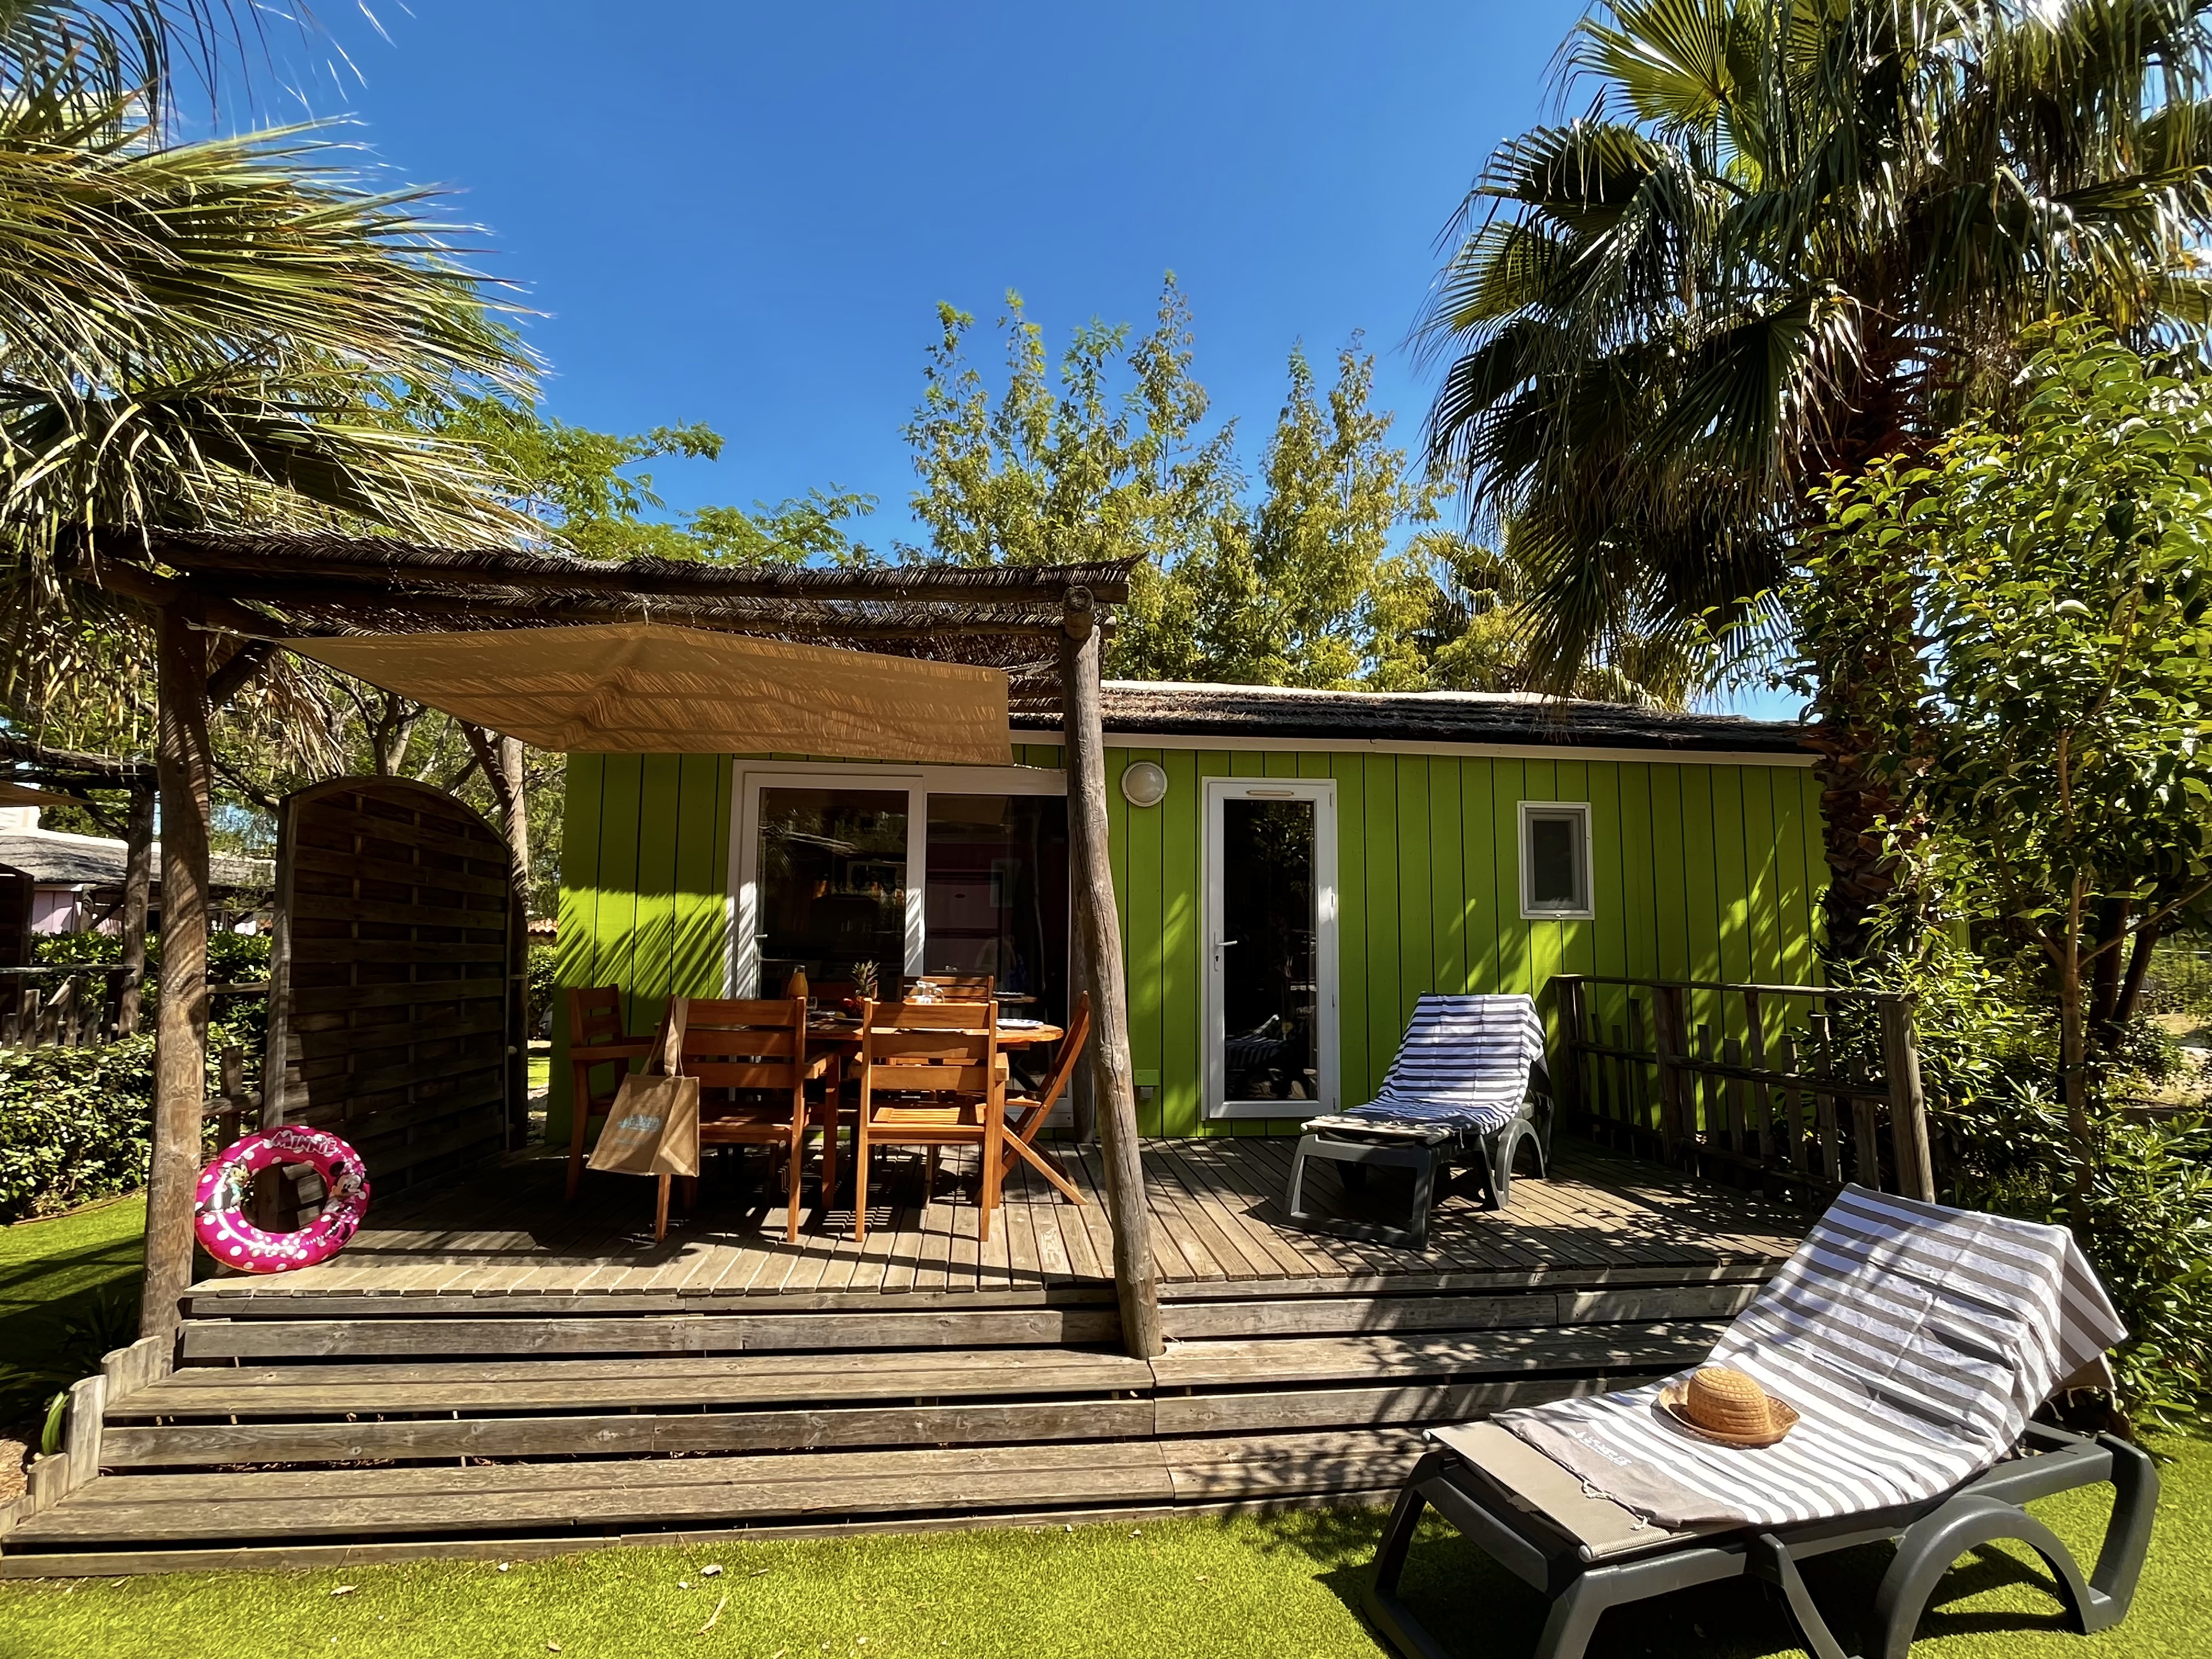 Location - Paillotte Boca Chica Premium Climatisée 34 M² - 3 Chambres - Terrasse 15M² - Camping de la Treille